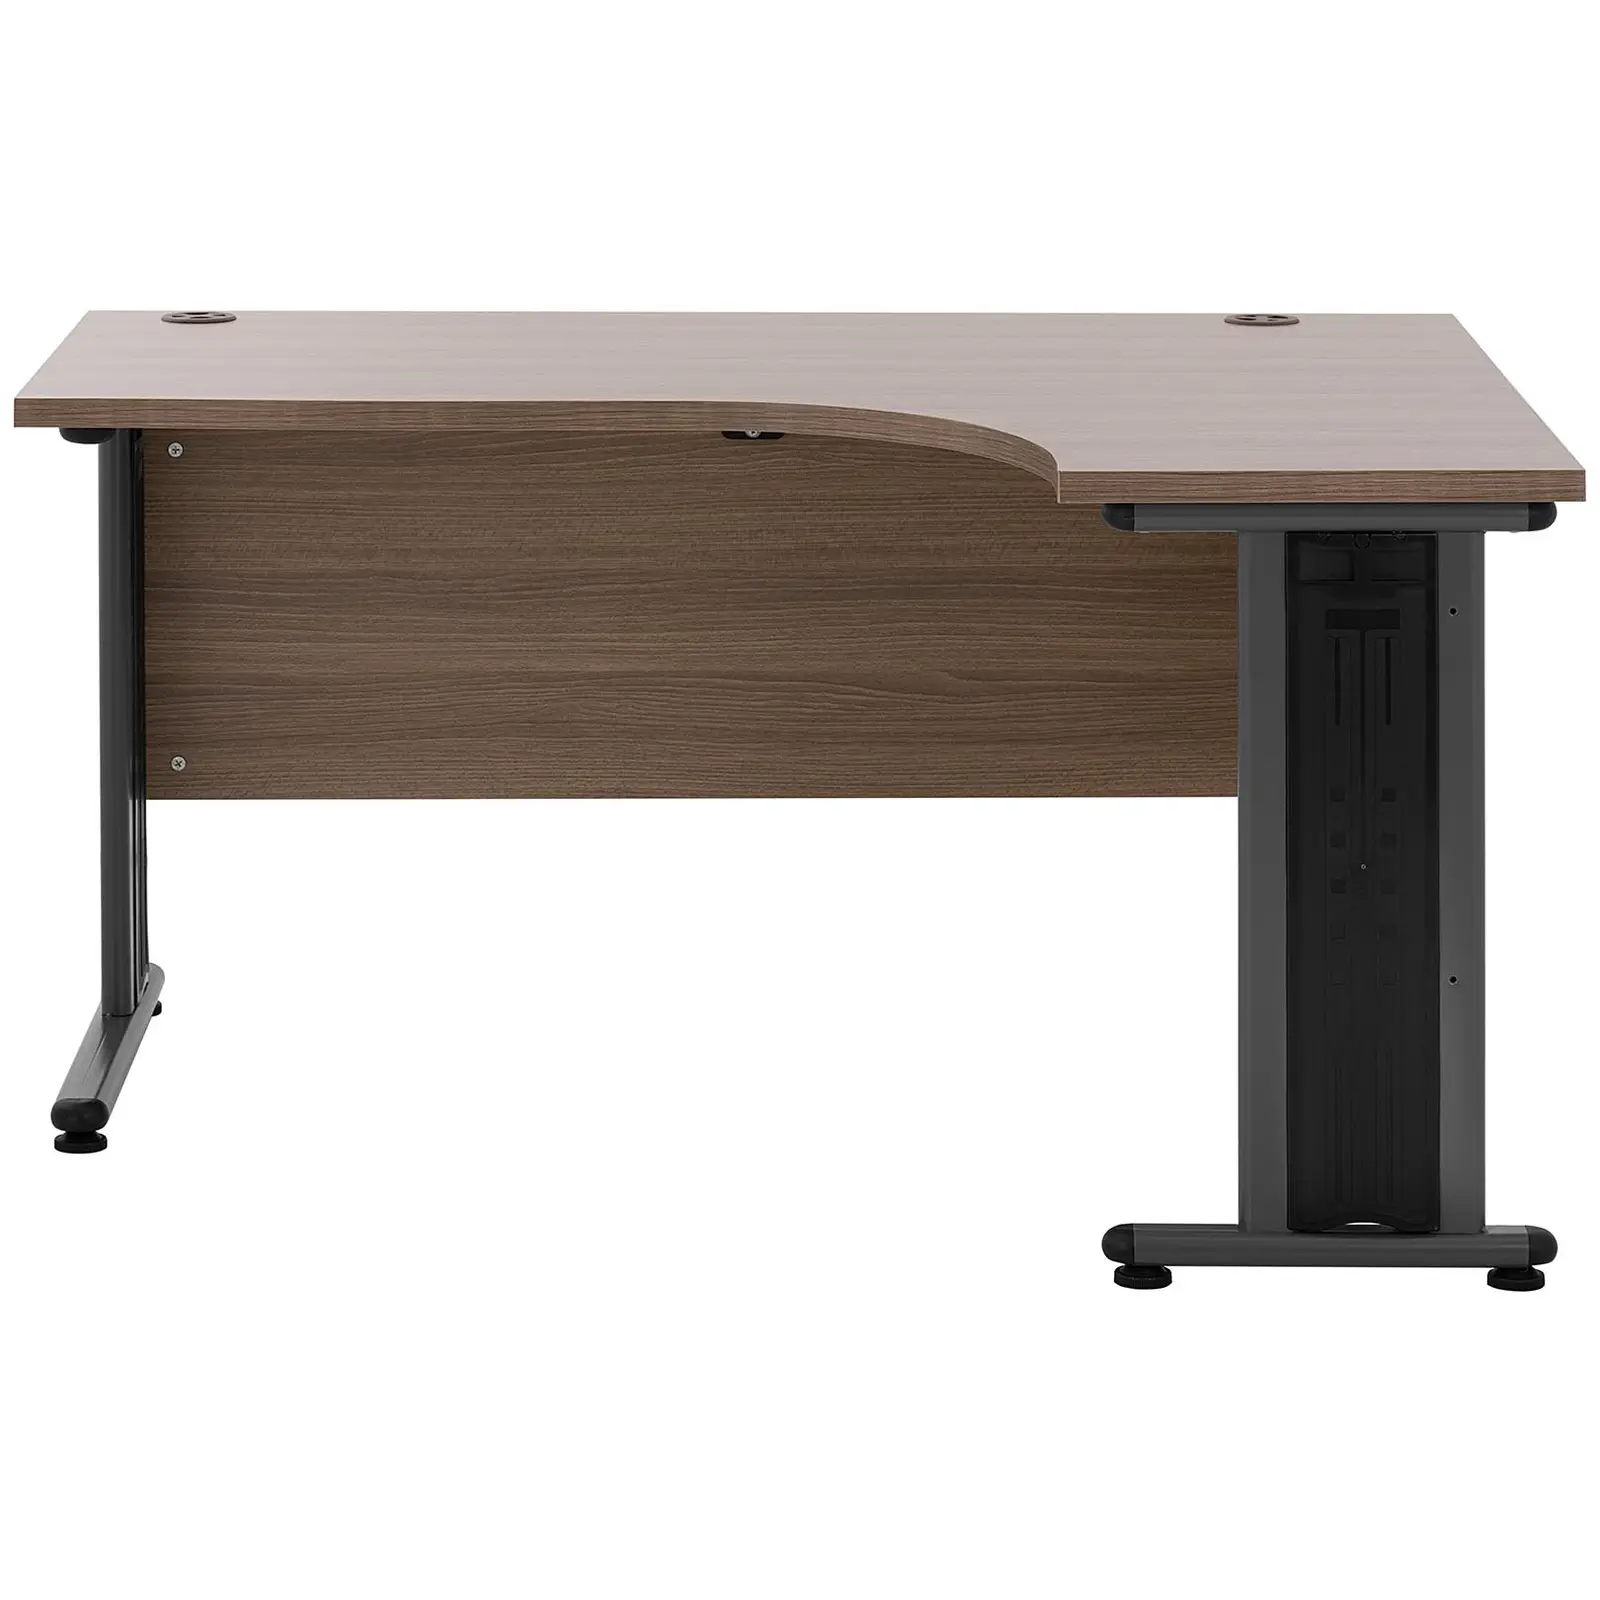 Rohový psací stůl - 140 x 120 cm - hnědá